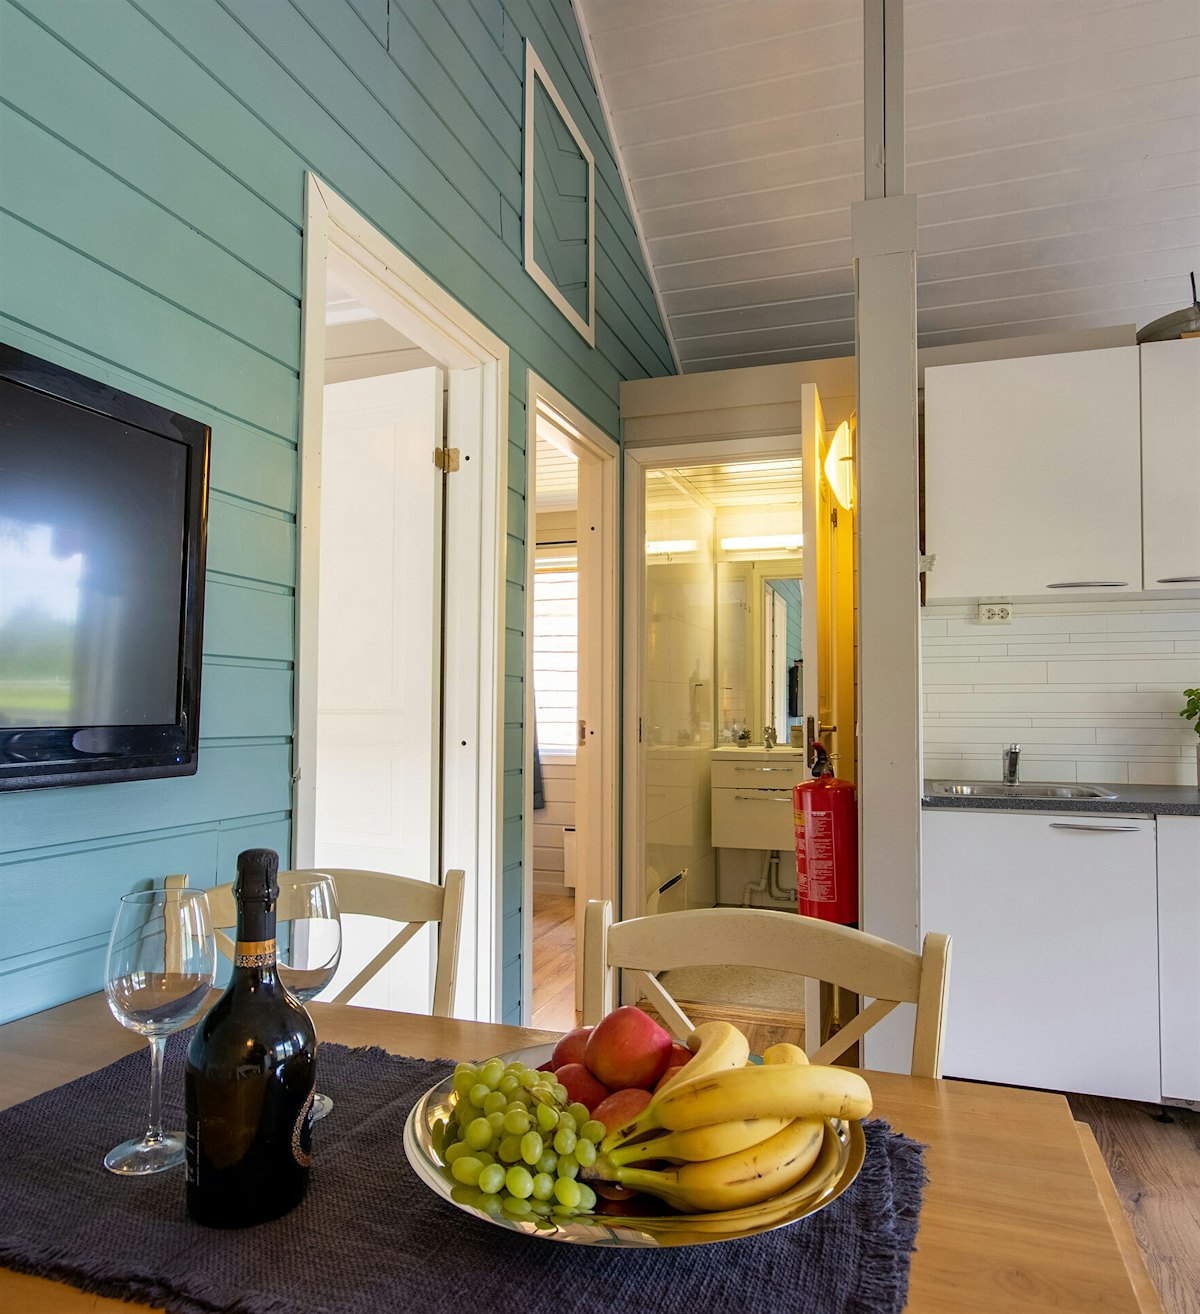 Wohnzimmer mit blauer Kontrastwand, weißer Küche und Esstisch mit Obstteller. Foto